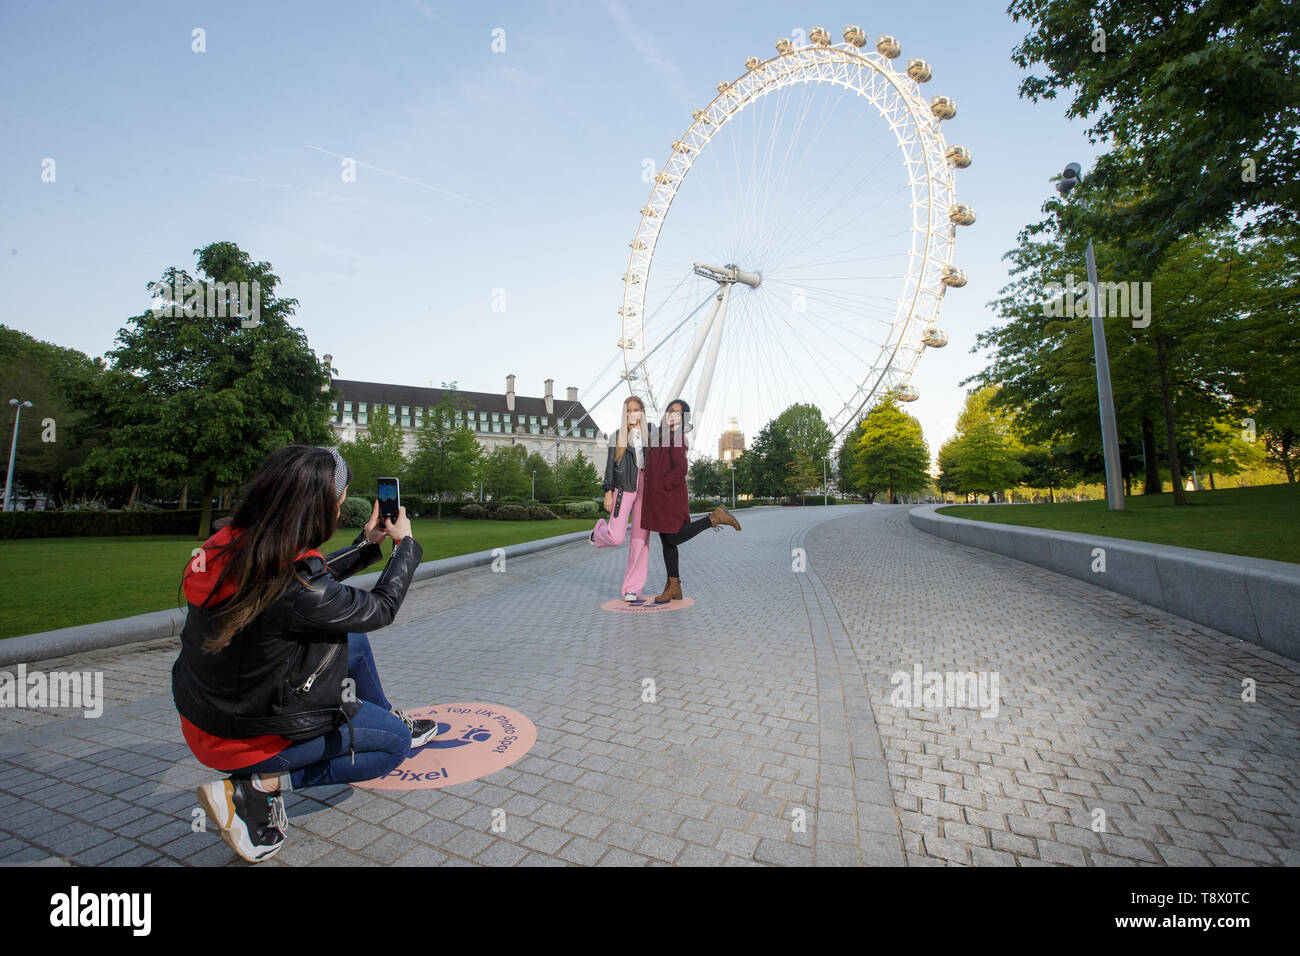 Los turistas tienen su foto tomada en el London Eye en Londres, como Google ha trazado exactamente donde encaje la nación favorita de fondos fotográficos para celebrar el lanzamiento de pixel 3a. Foto de stock